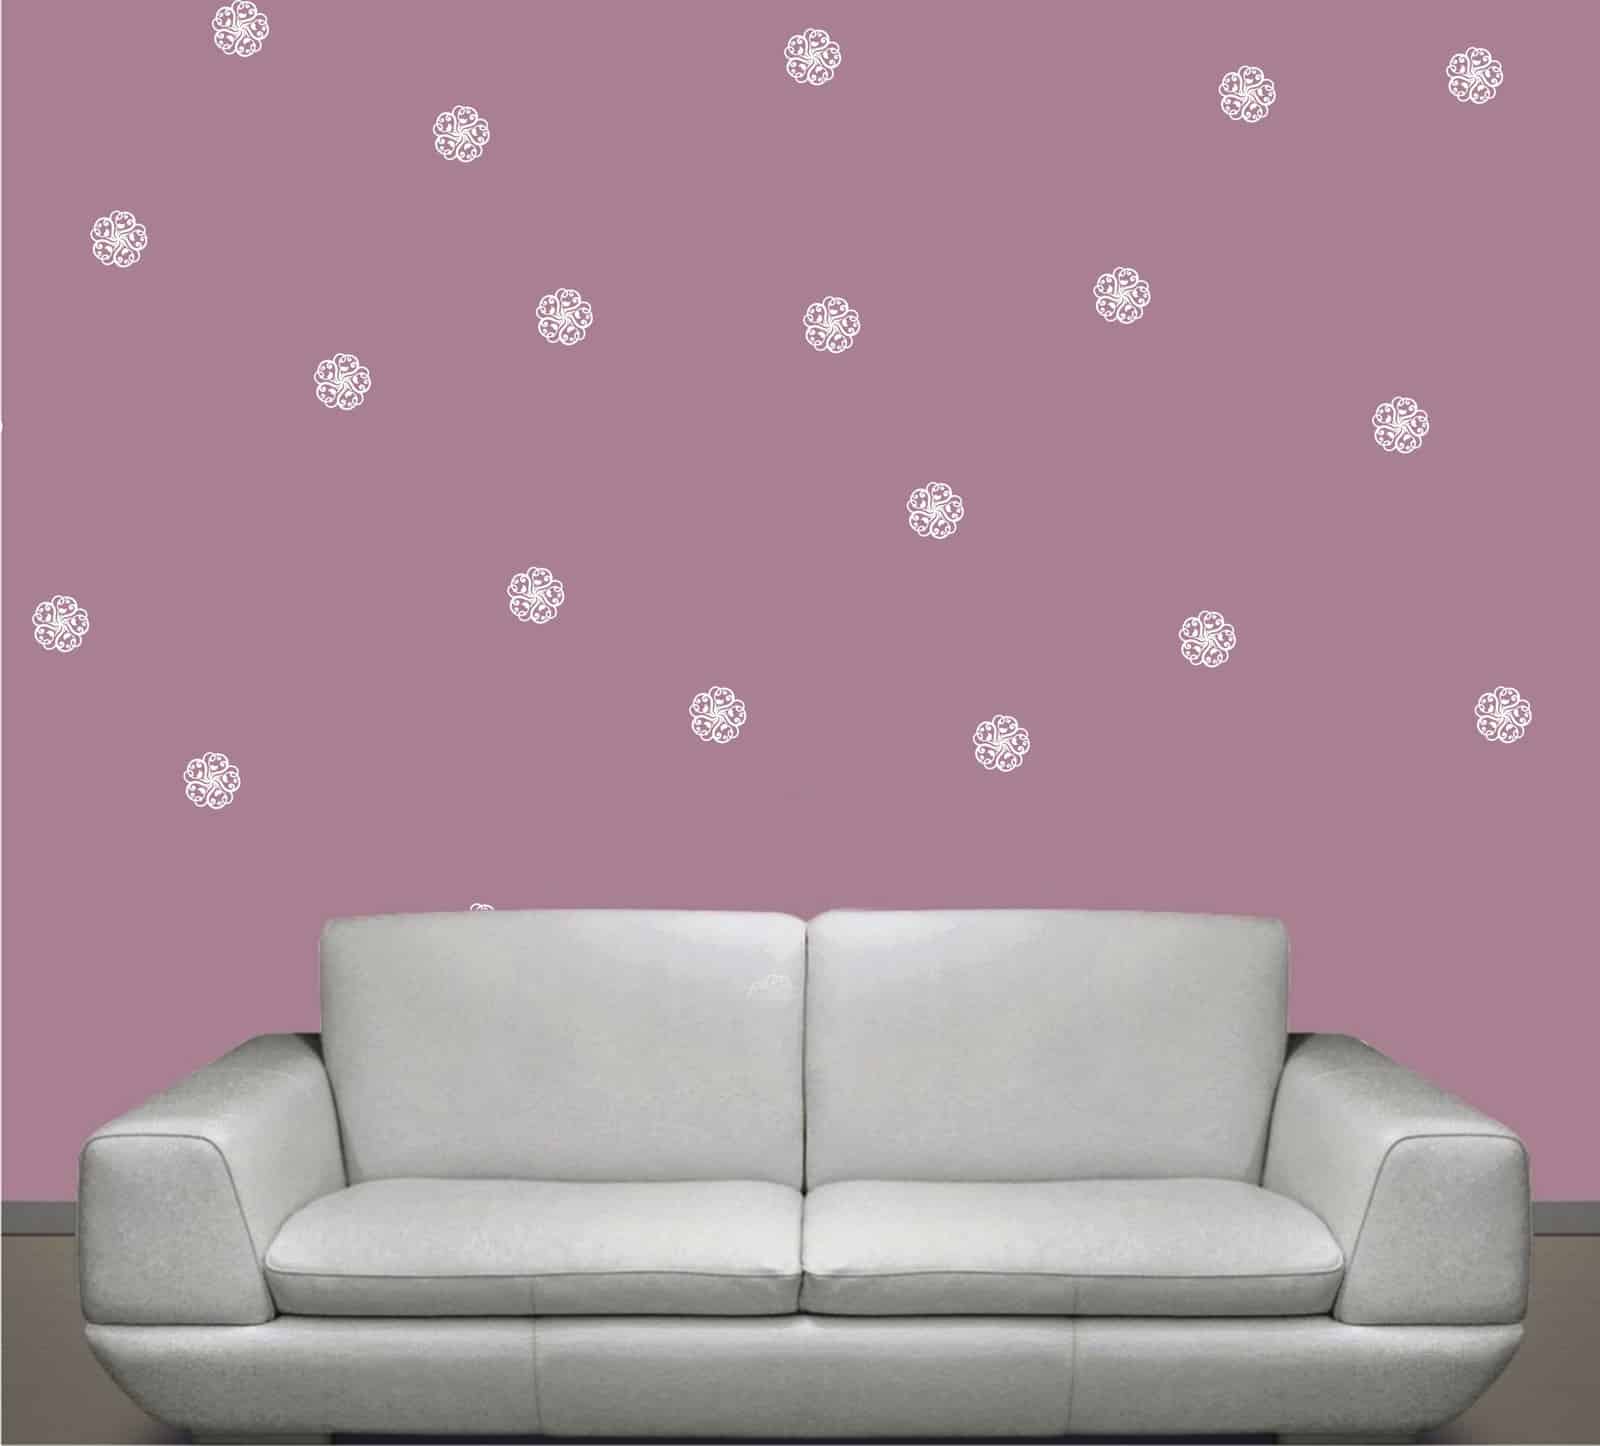 Flower Swirl Wall Pattern